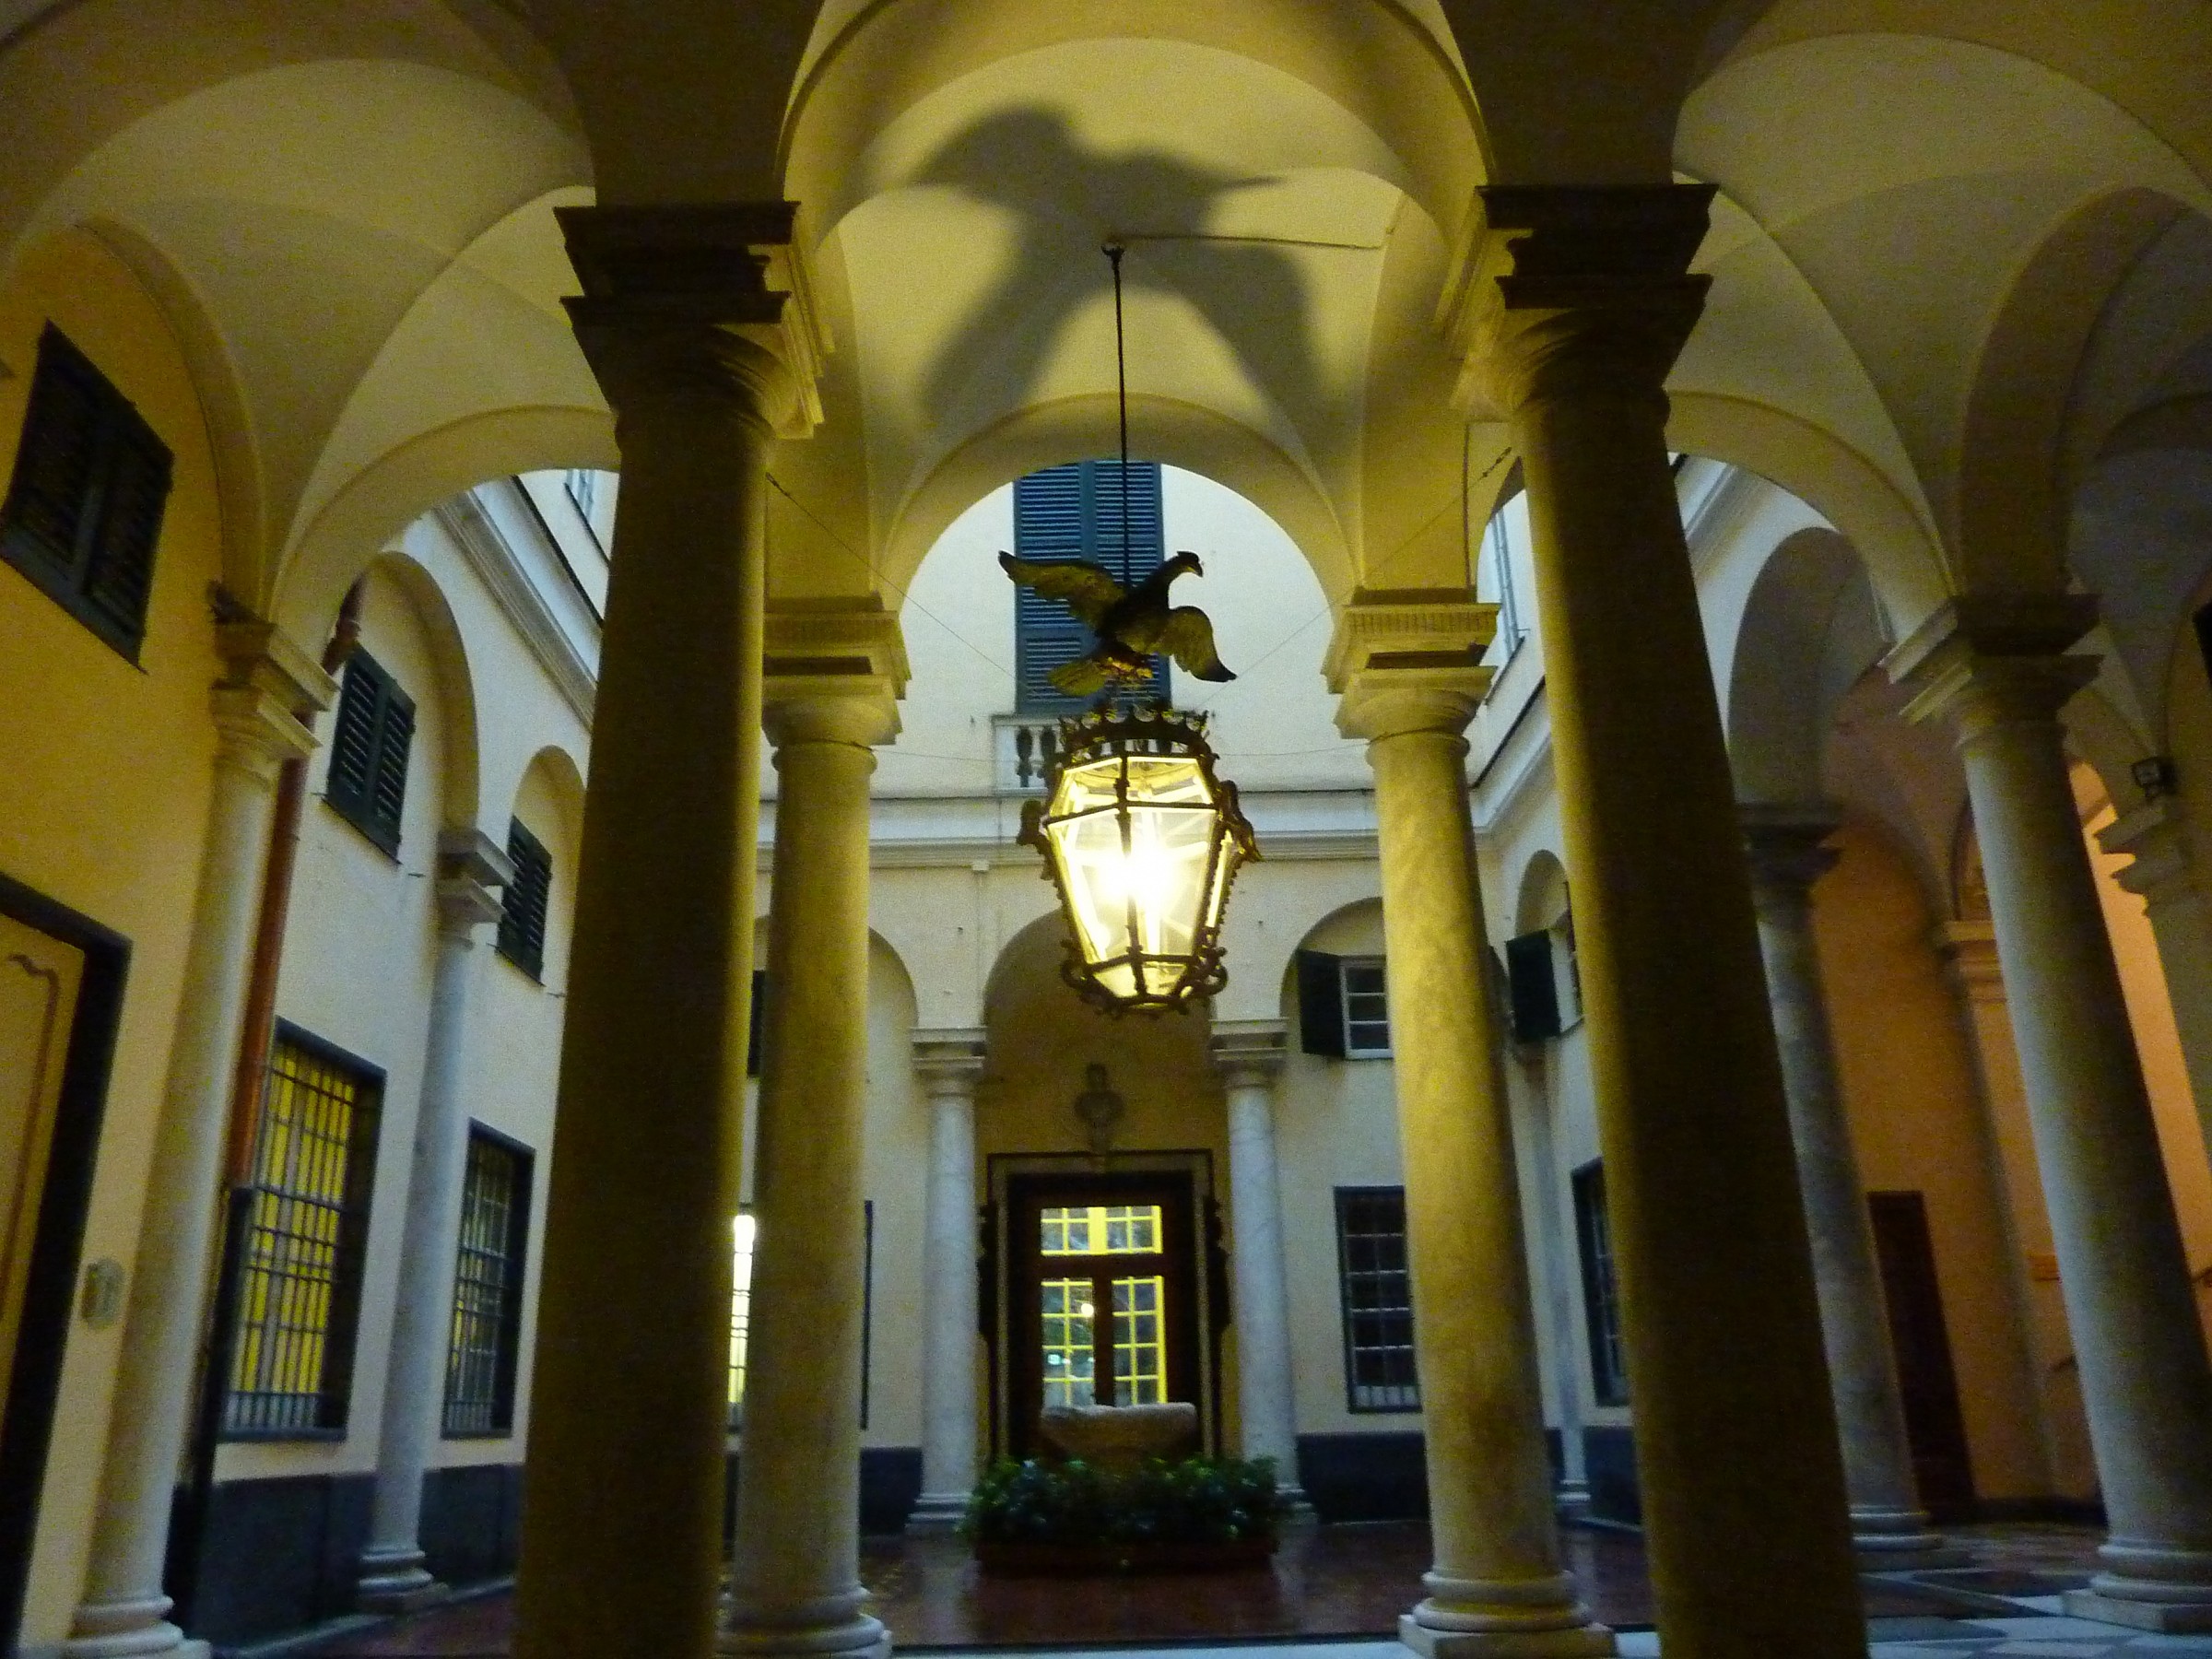 Genoa's historic center building...